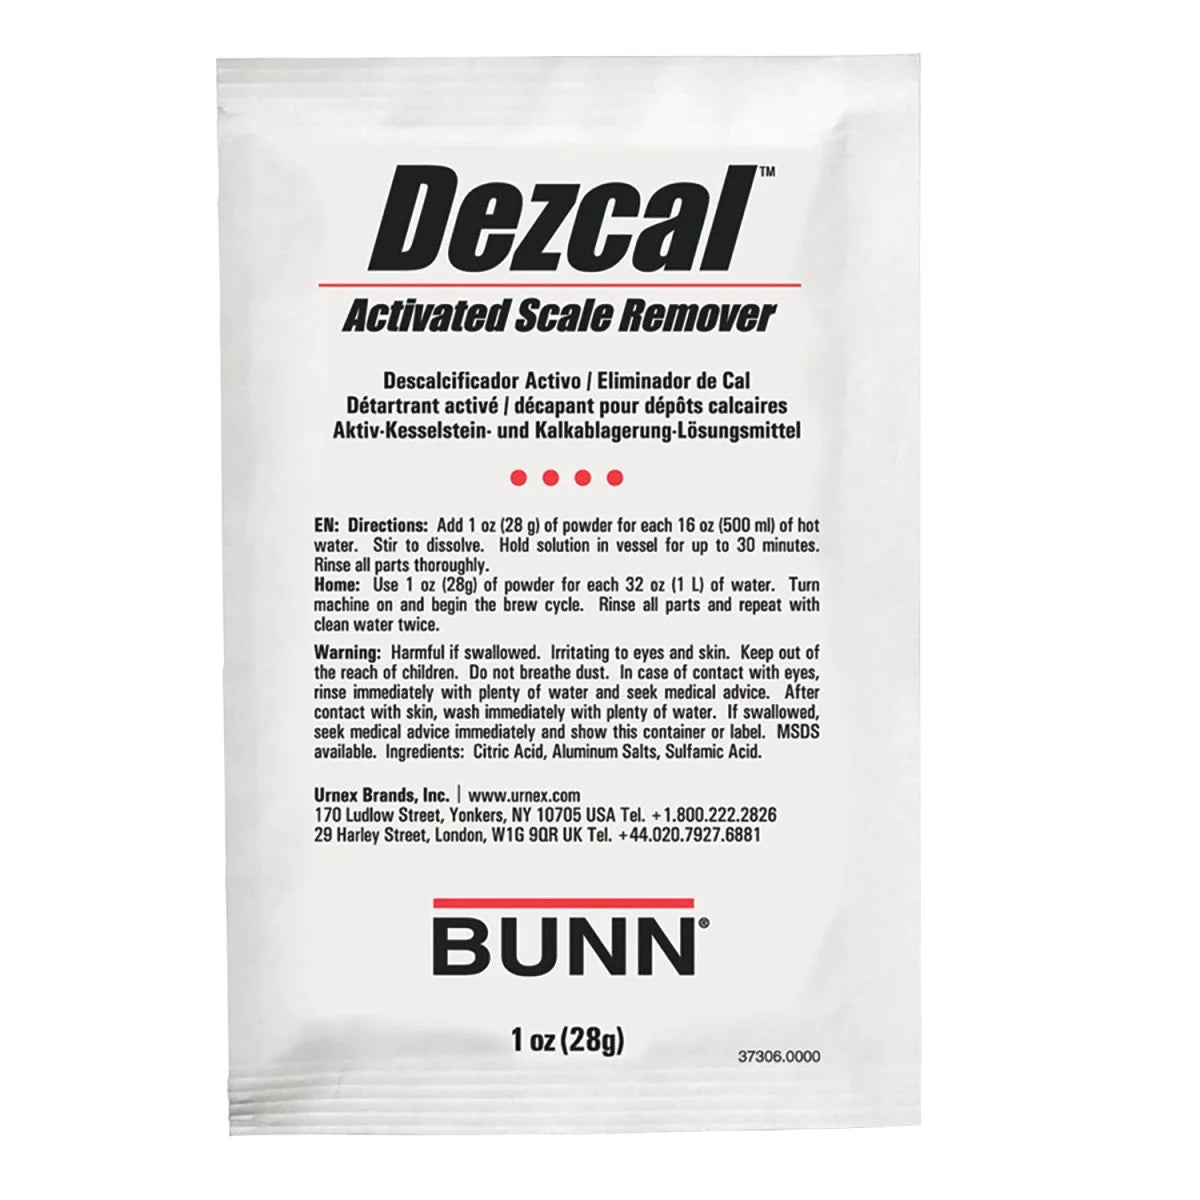 BUNN Coffee Maker Descaler Dezcal made by URNEX | 4 x 1 oz packets | 37306.0001